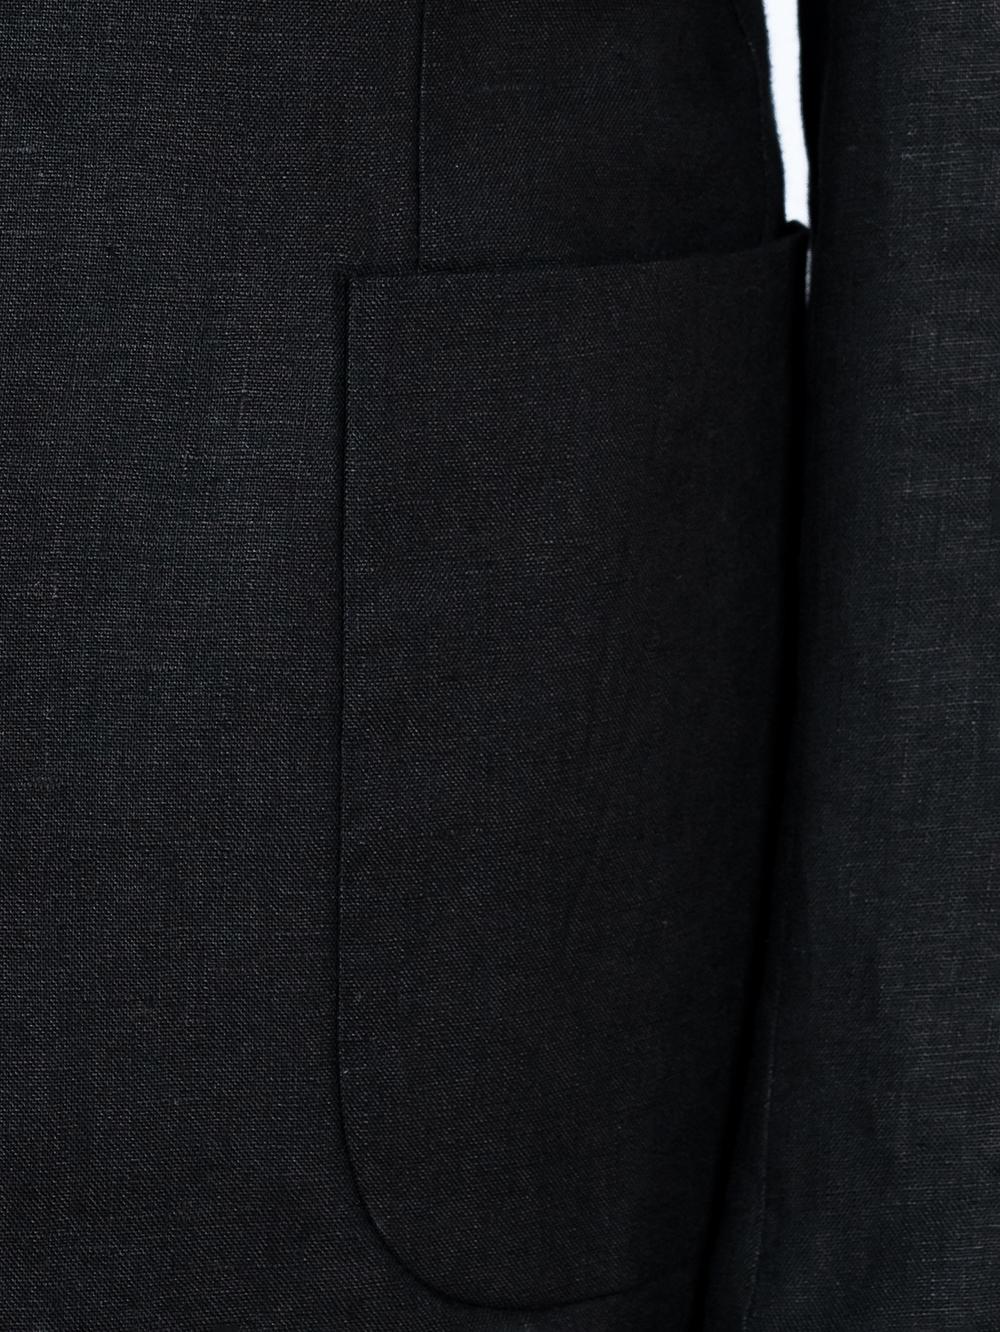 Black Pure Linen Men Summer Suit | Tailored Fit